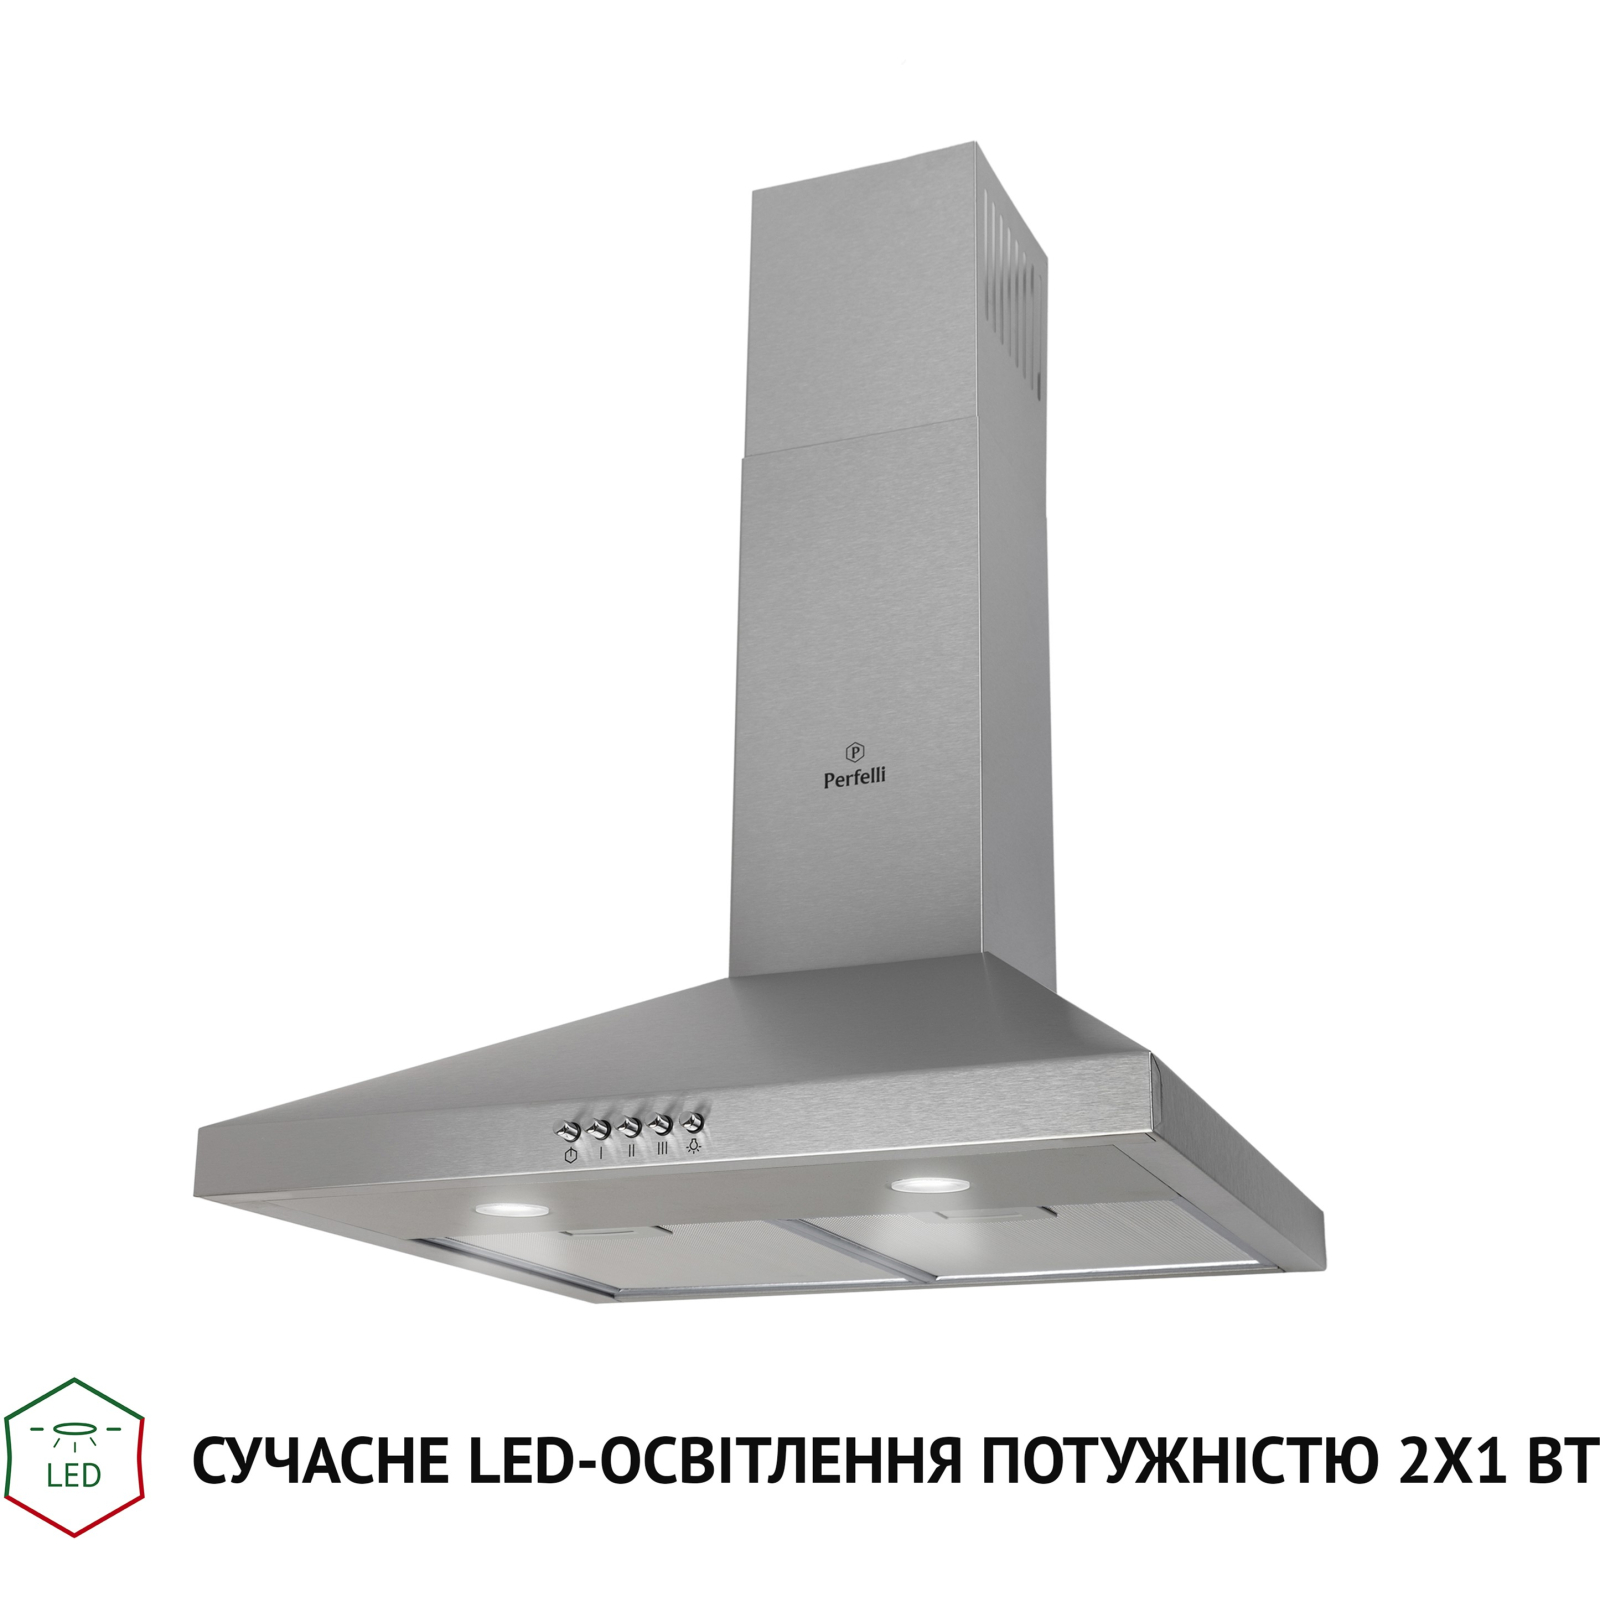 Вытяжка кухонная Perfelli K 5202 SG 700 LED изображение 3